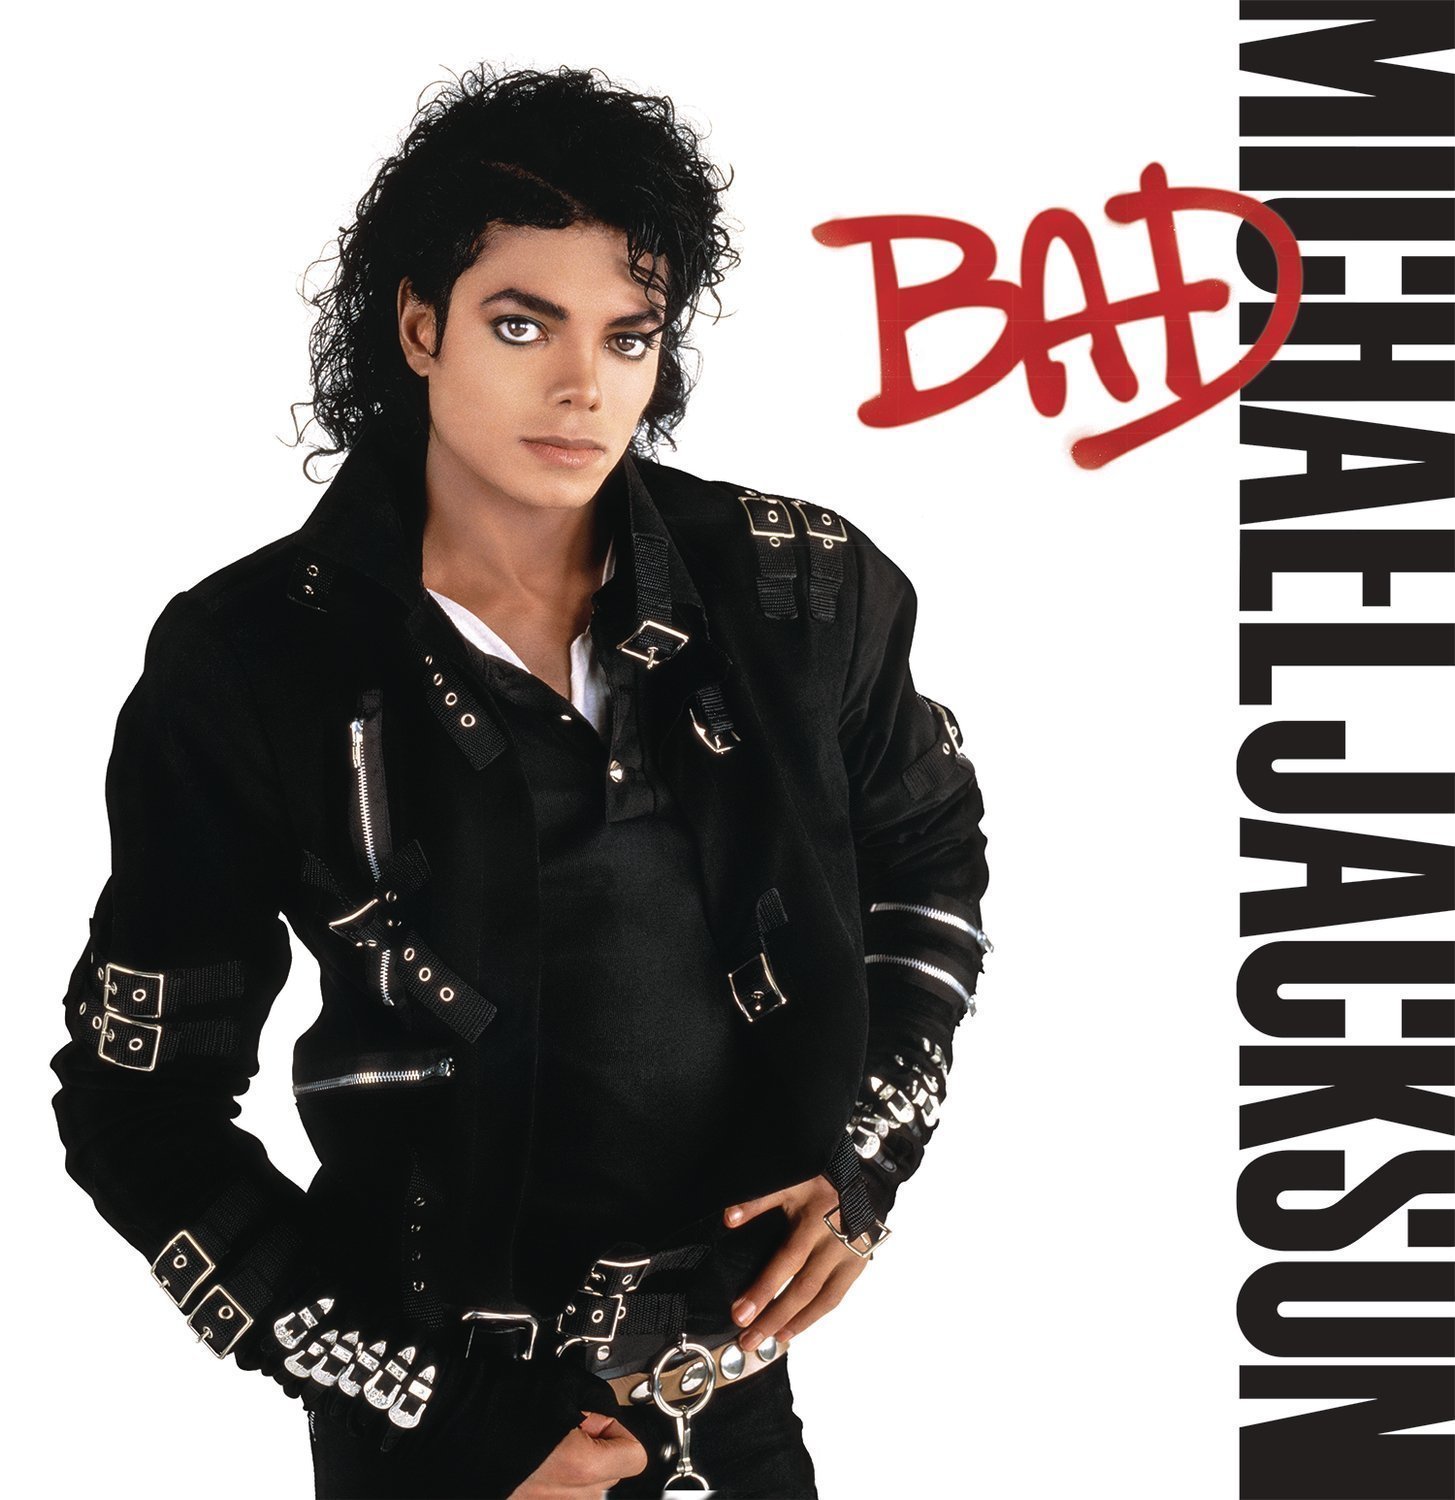 Vinyylilevy Michael Jackson Bad (LP)